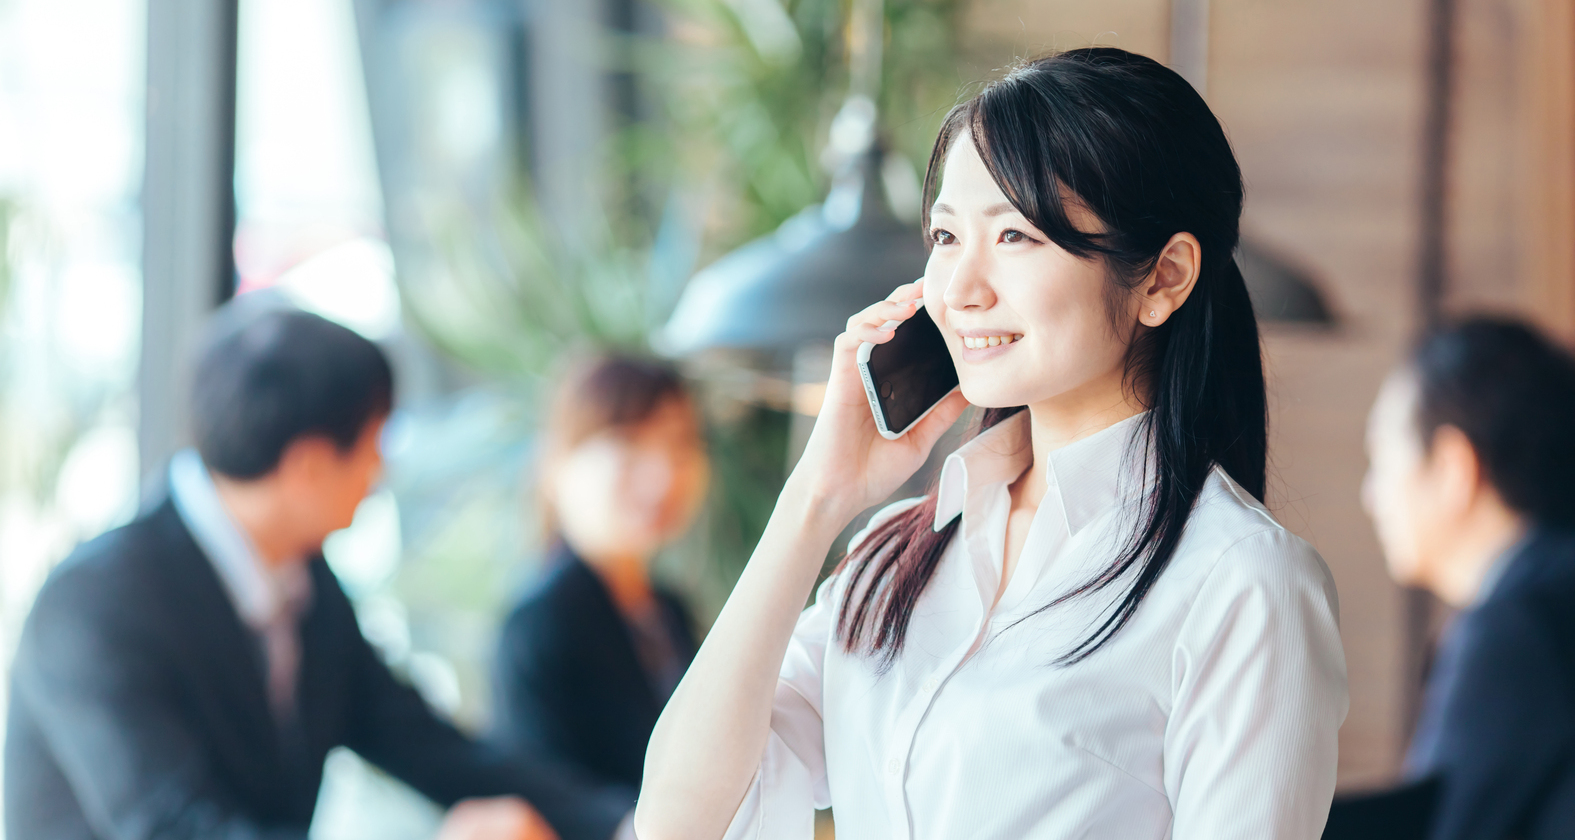 営業, スマートフォンで営業の電話をする女性従業員の写真